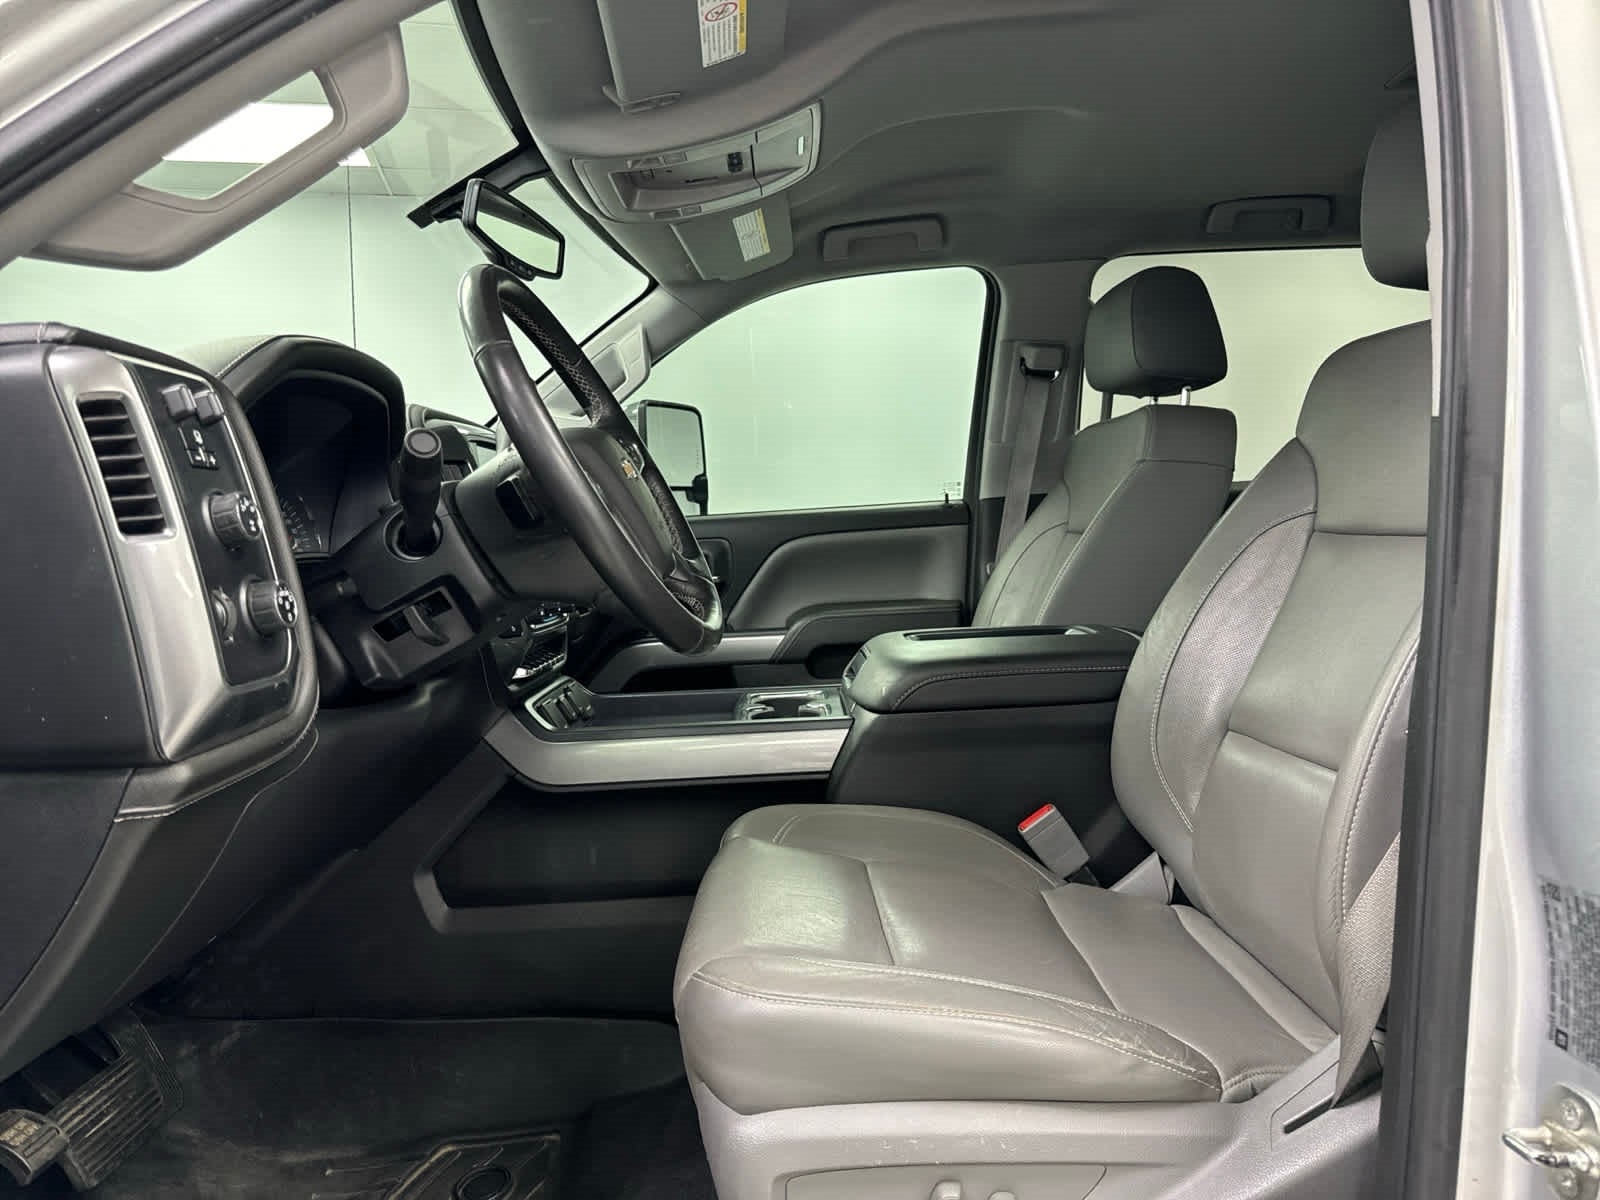 2016 Chevrolet Silverado 3500HD LTZ 4WD Crew Cab 153.7